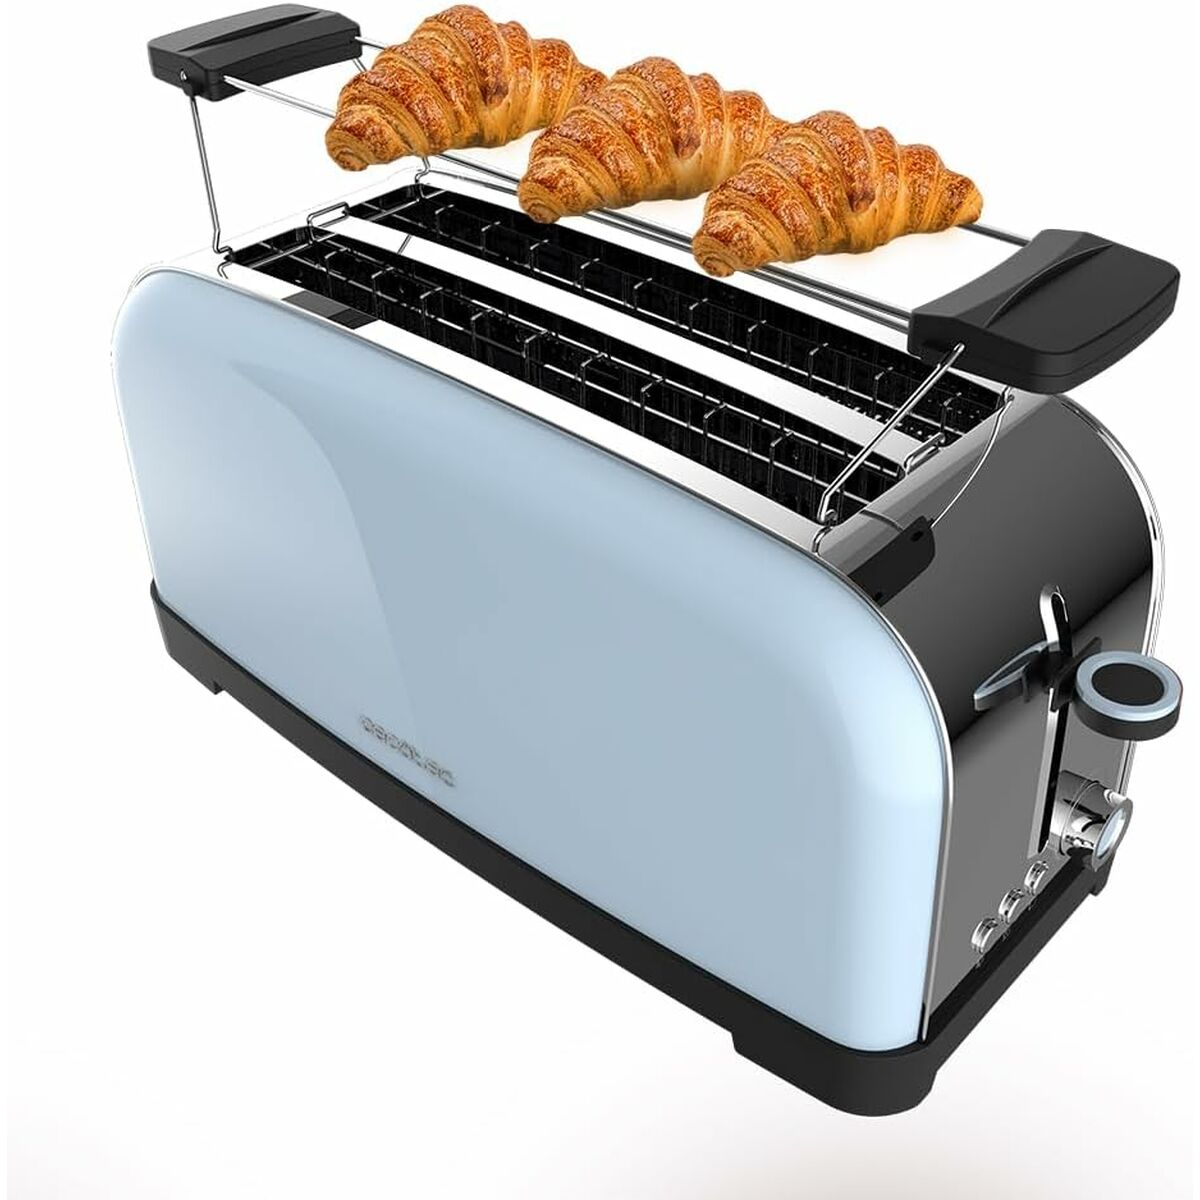 Kaufe Toaster Cecotec Toastin' time 1500 1500 W bei AWK Flagship um € 67.00